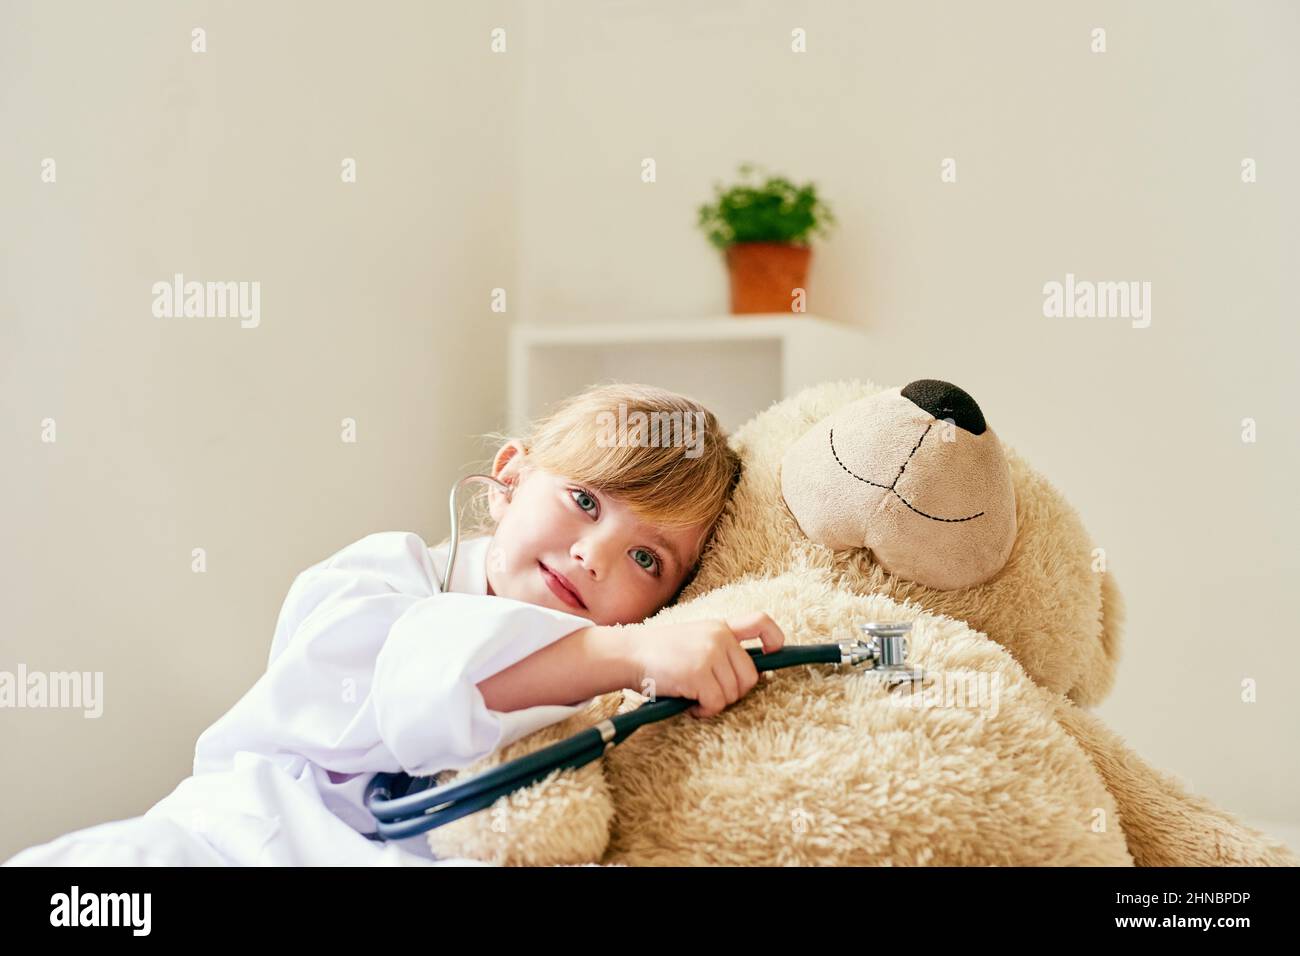 Ora thats un cuore felice che suona. Girato di una bambina adorabile vestita come medico ed esaminando un orsacchiotto con uno stetoscopio. Foto Stock